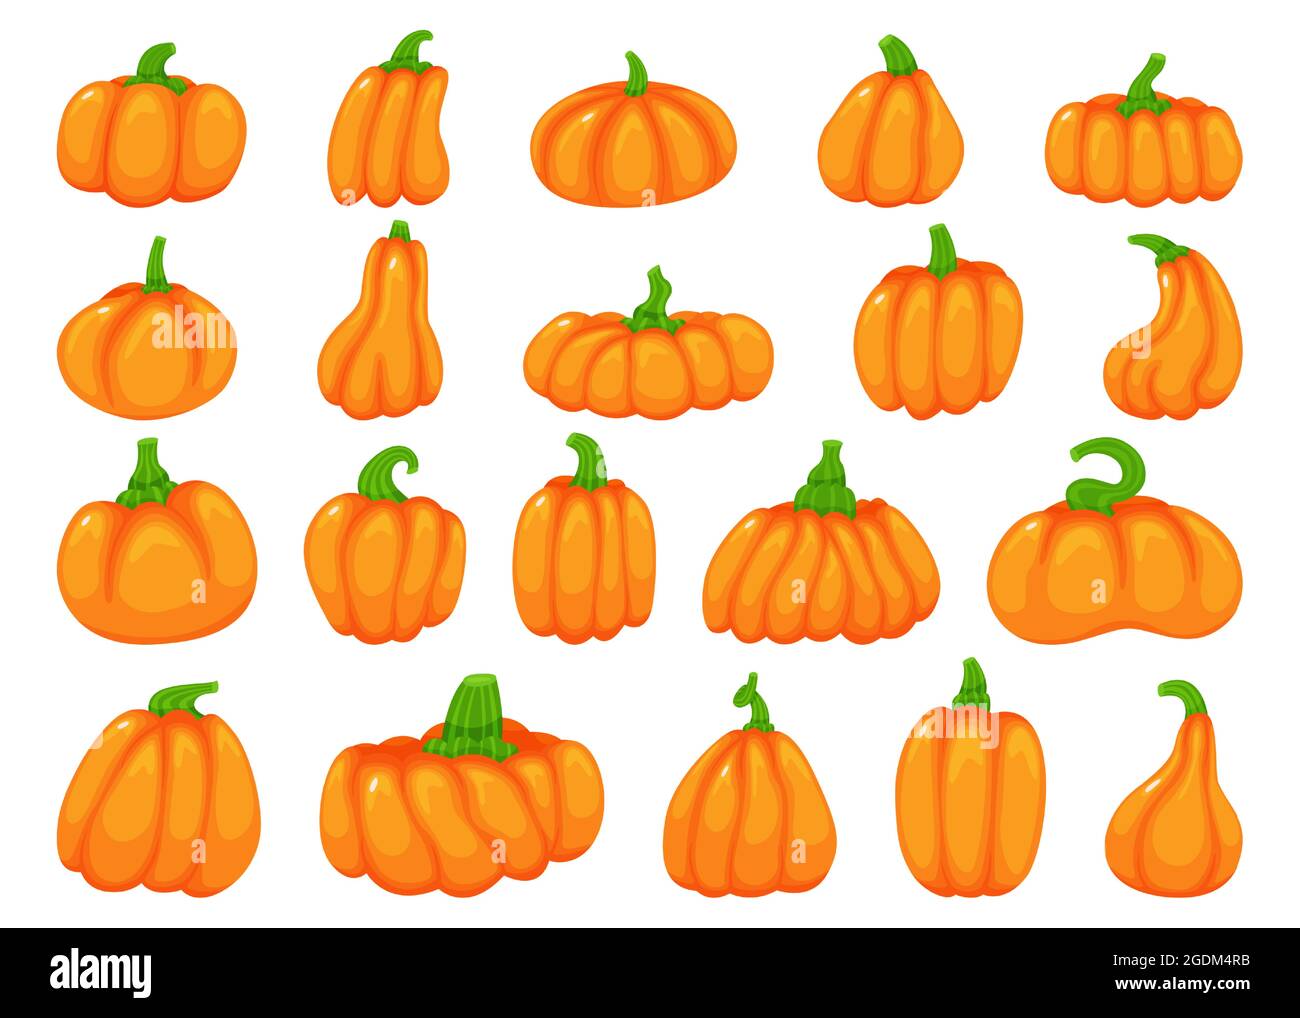 Dibujos animados halloween calabazas, caída tradicional calabaza naranja.  Calabazas lindas de varias formas, verdura de calabaza, elemento de  decoración de otoño vector conjunto. Planta orgánica sana para el día de  acción de